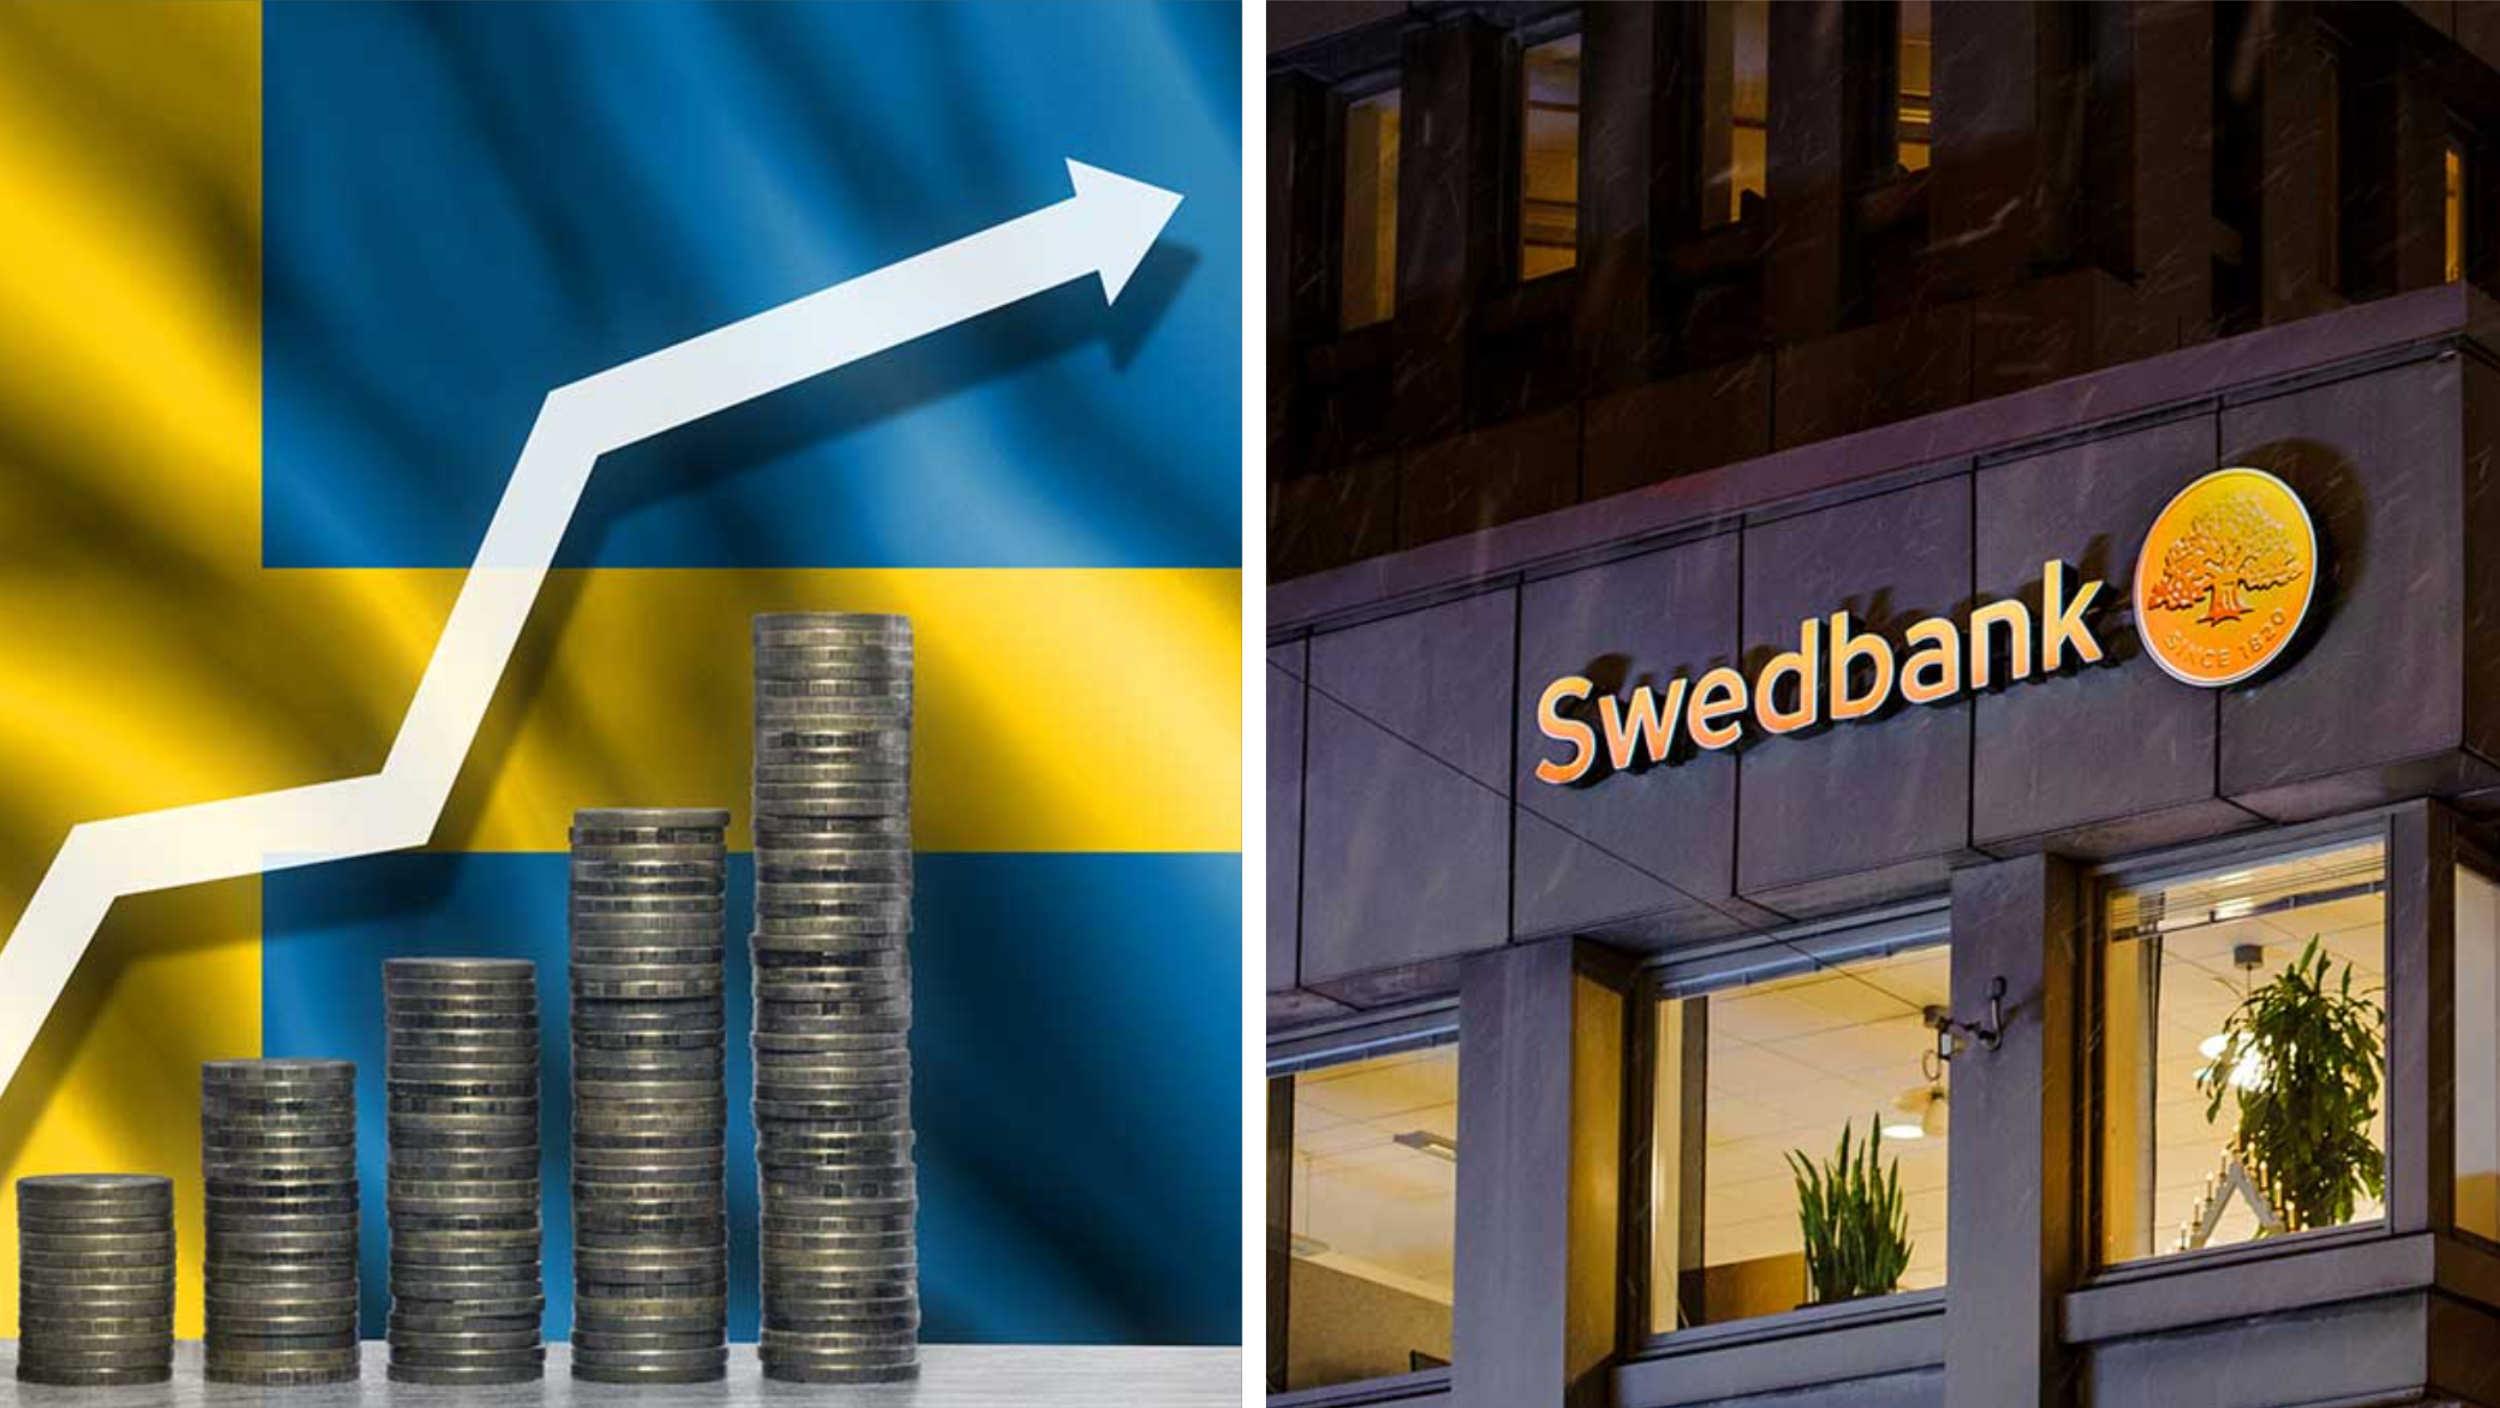 Swedbank: Stigande realinkomster bäddar för snabb återhämtning i ekonomin